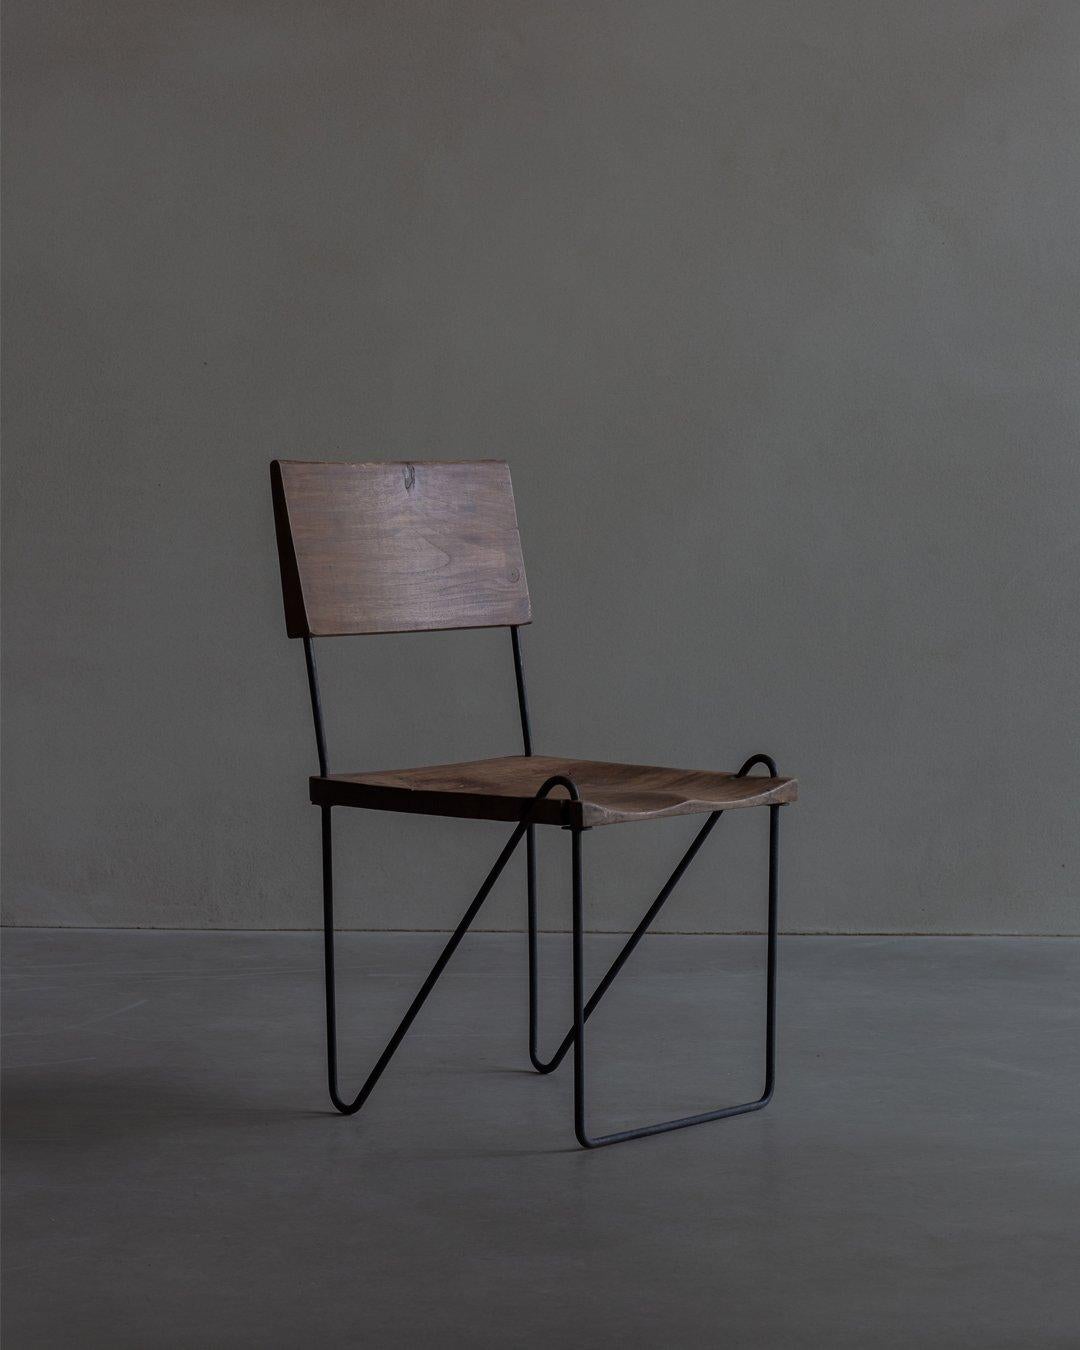 Stuhl aus Teakholz und Eisen, entworfen von Pierre Jeanneret, ca. 1953-1954, mit Sitz und Rückenlehne aus massivem, geschnitztem Teakholz. Die Rückenlehne ist leicht geneigt und mit komplizierten Mustern beschnitzt. Die Sitzfläche ist ebenfalls aus